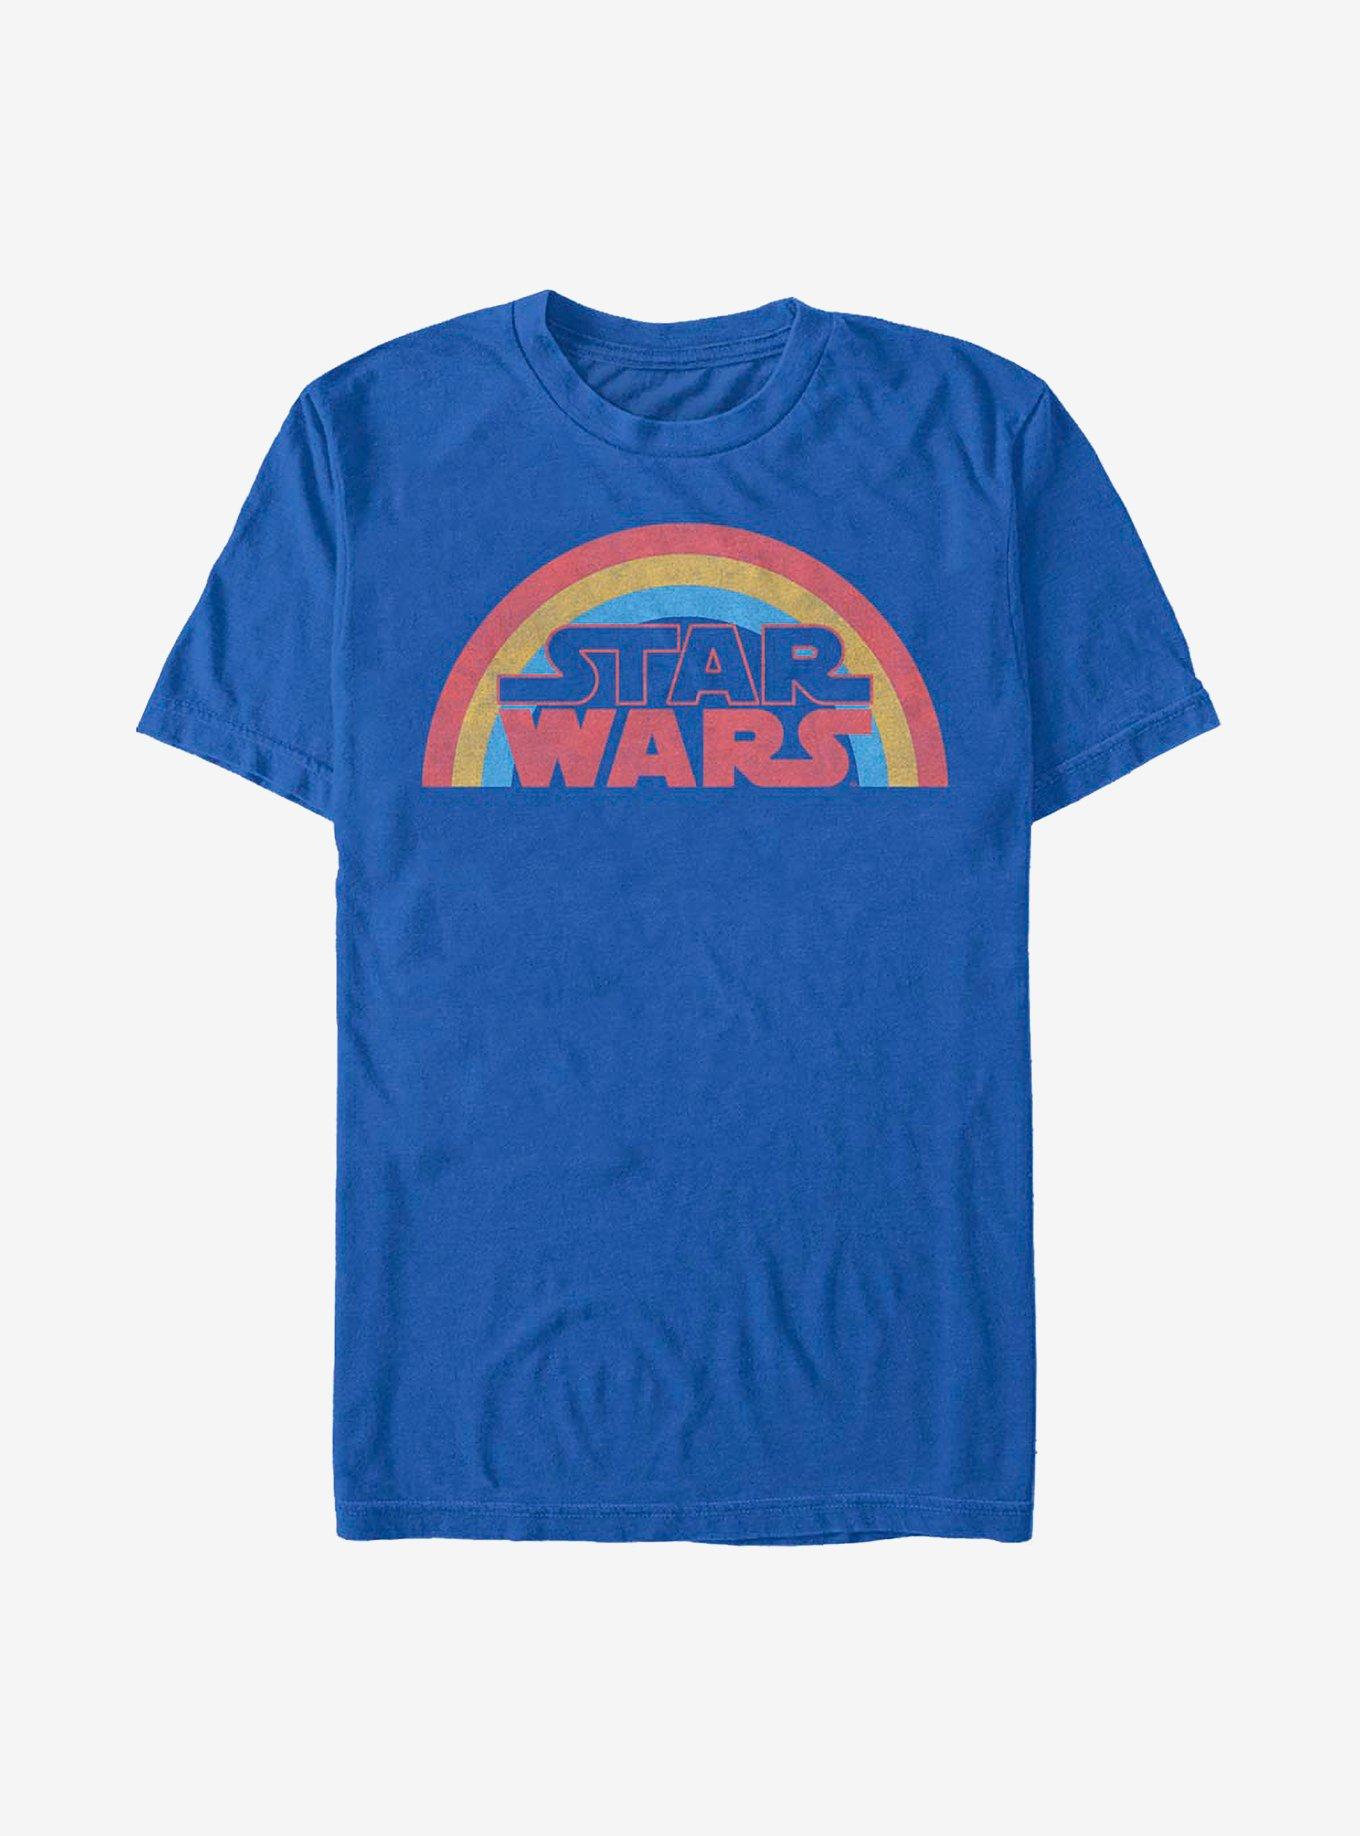 Star Wars Rainbow Star Wars T-Shirt, ROYAL, hi-res